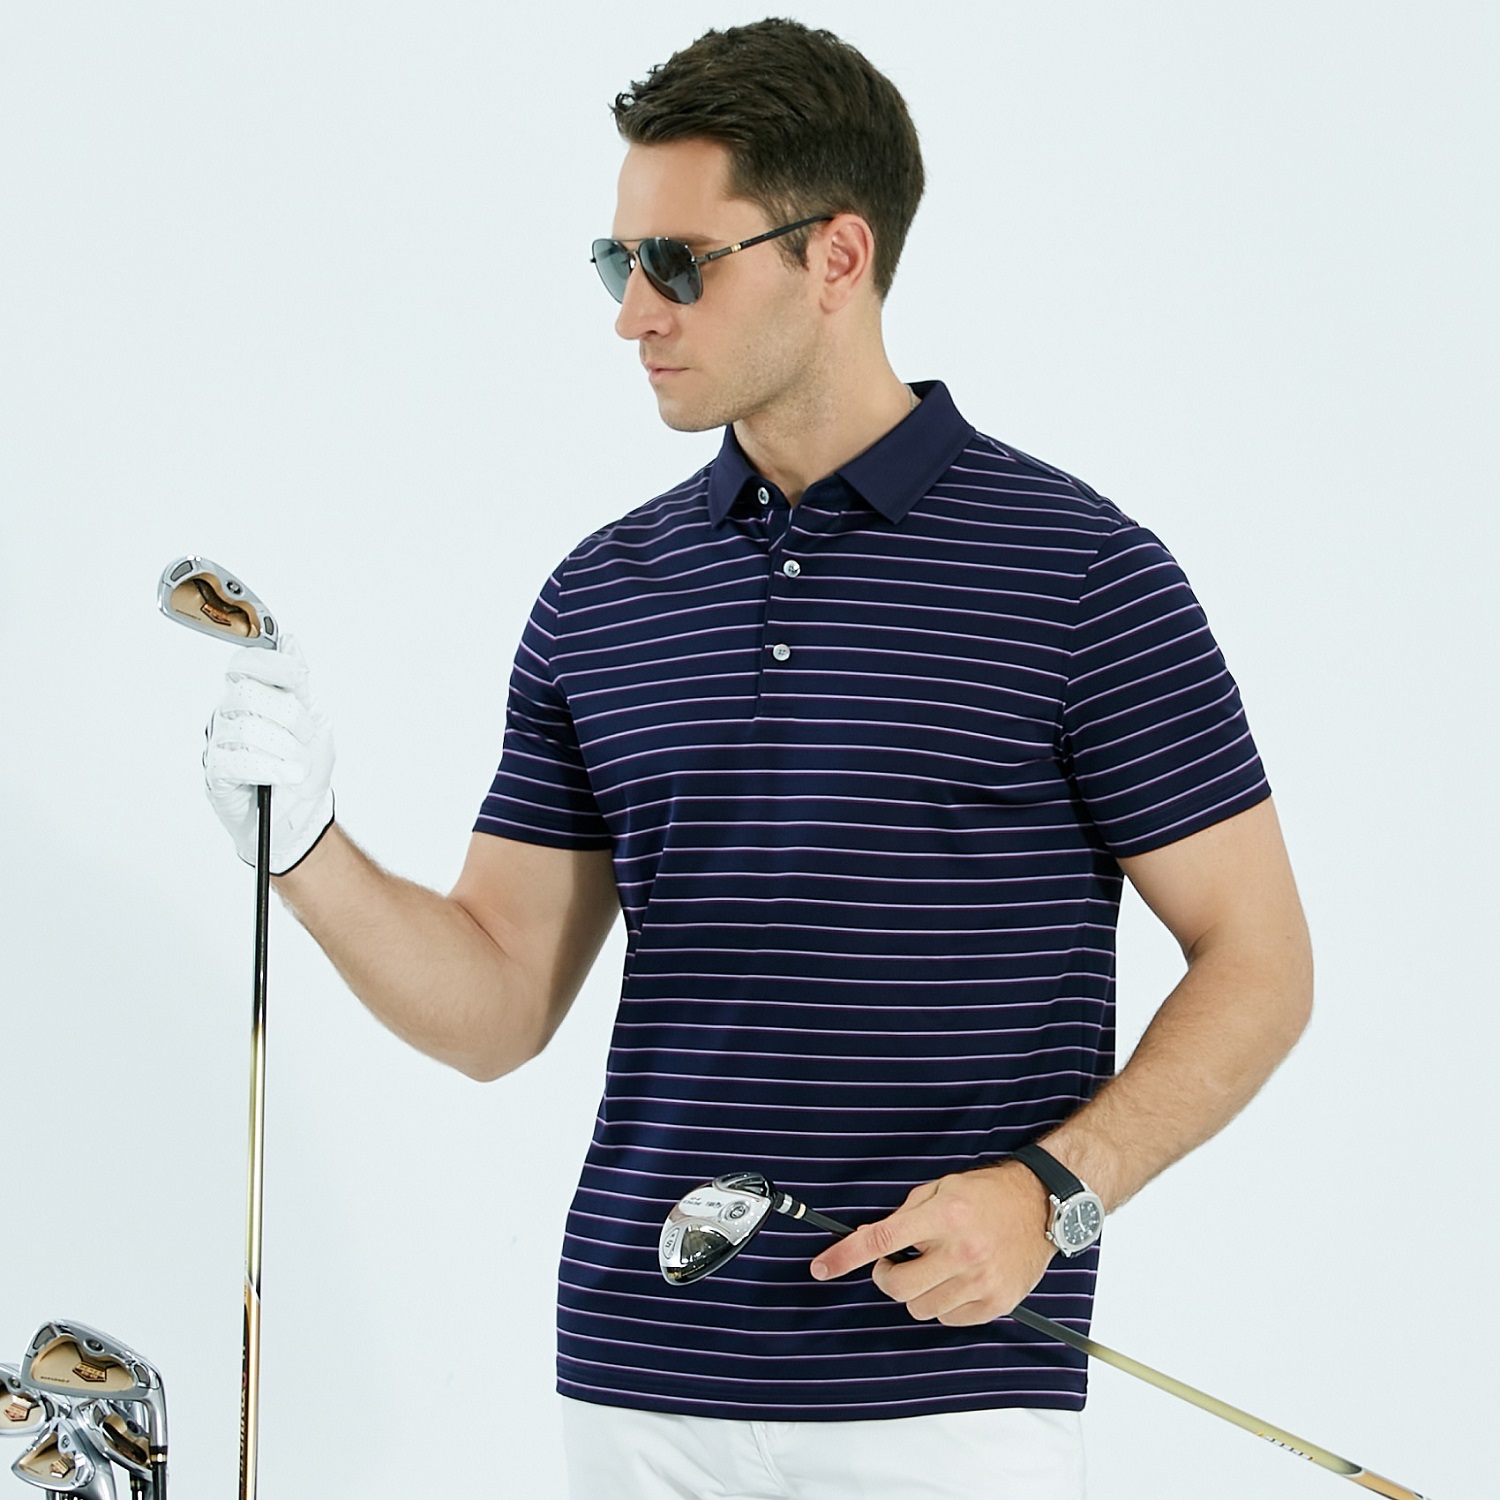 Wysokiej jakości koszulka polo z bawełny i jedwabiu, męska koszulka polo do golfa